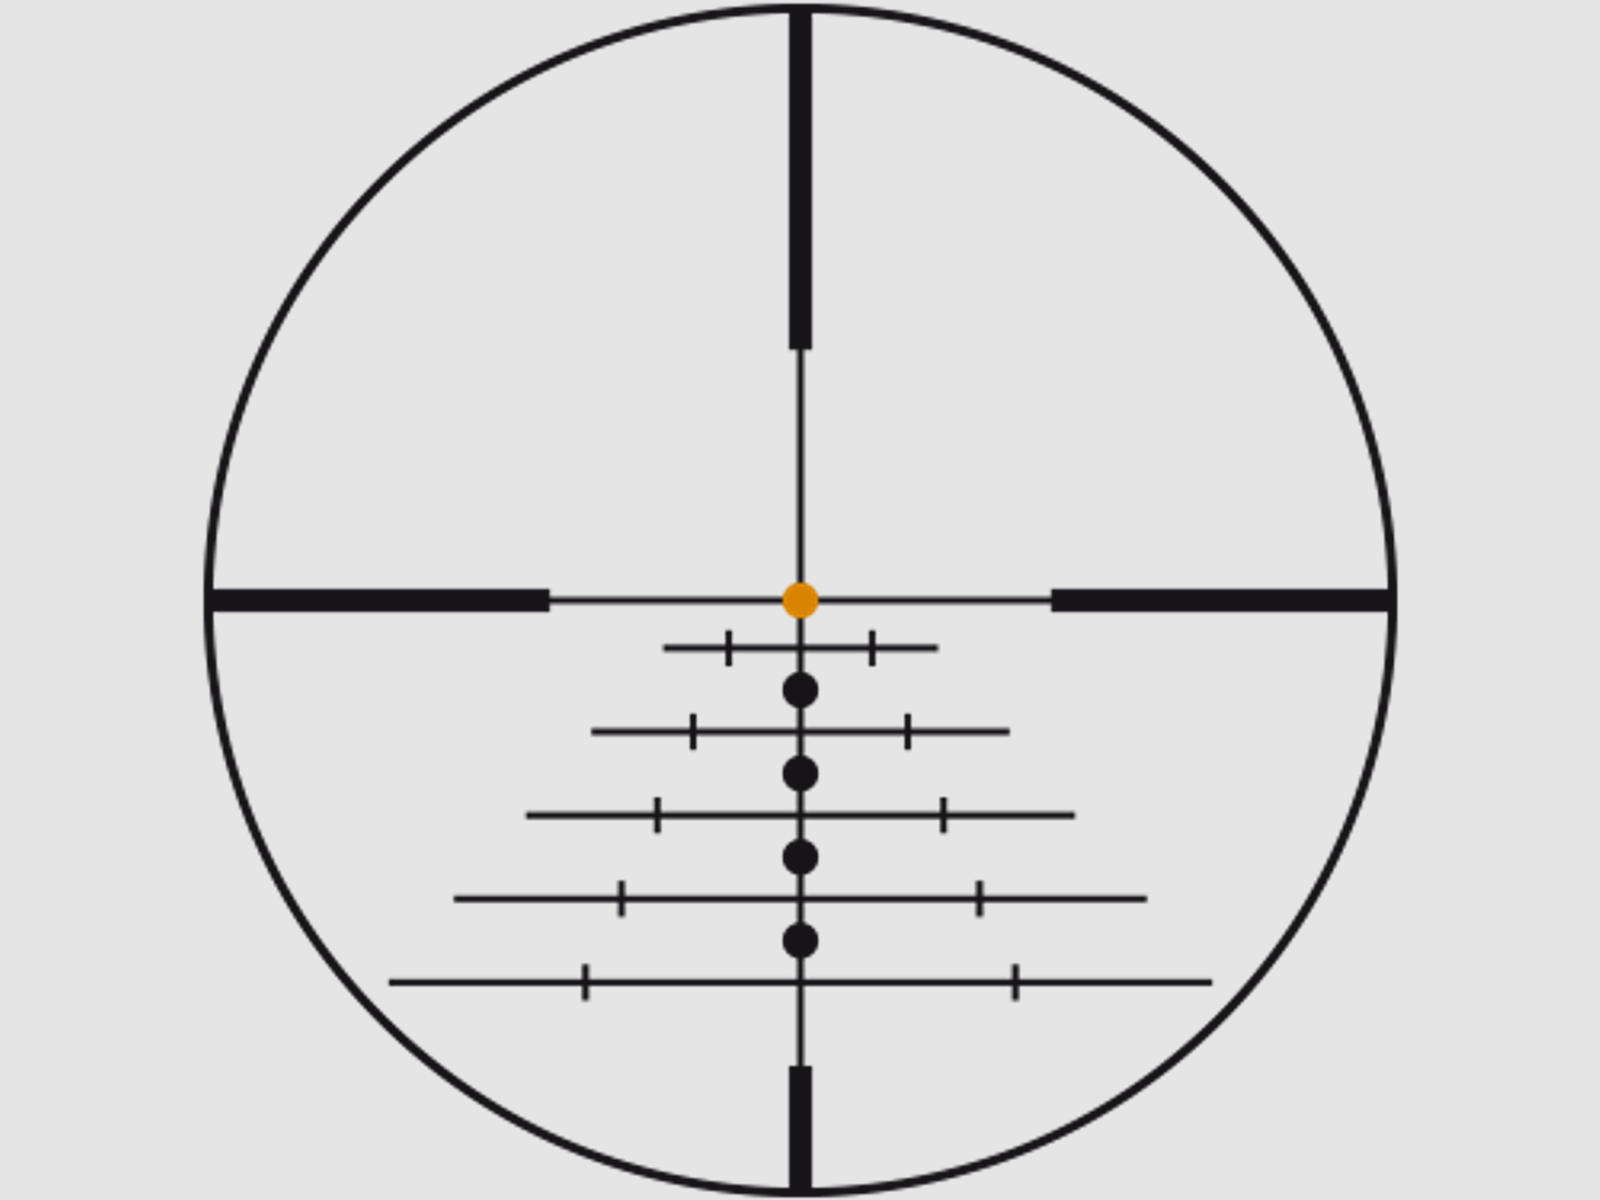 SWAROVSKI Zielfernrohr mit Leuchtabsehen 2,3-18x56 P Z8i L (30mm) Abs. 4A-I/4A-300I/BRX-I/4W-I